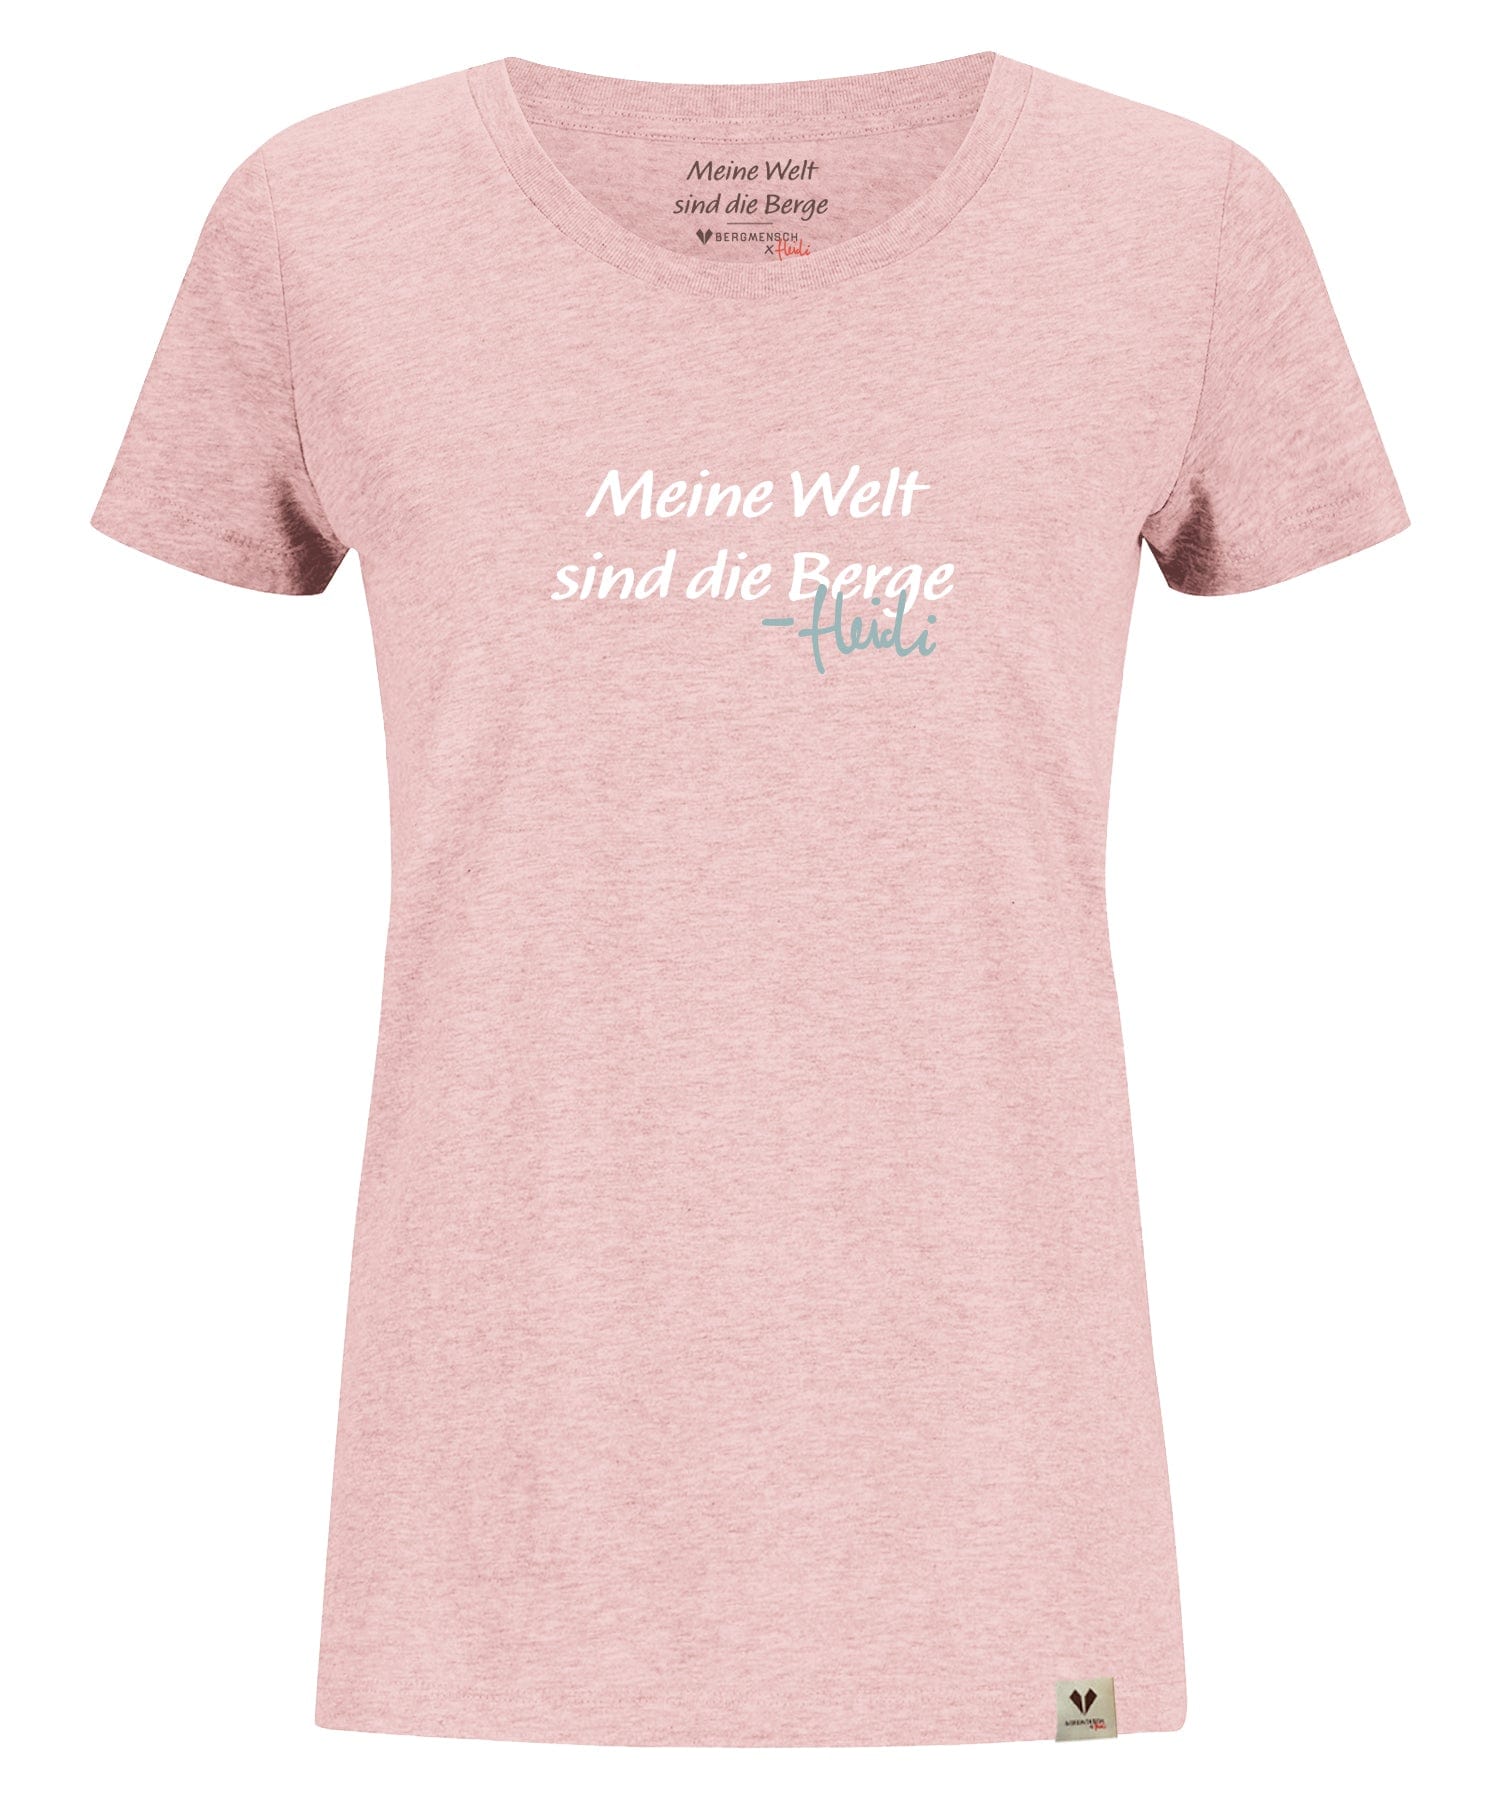 HEIDI - Meine Welt sind die Berge - Damen Premium Organic Shirt